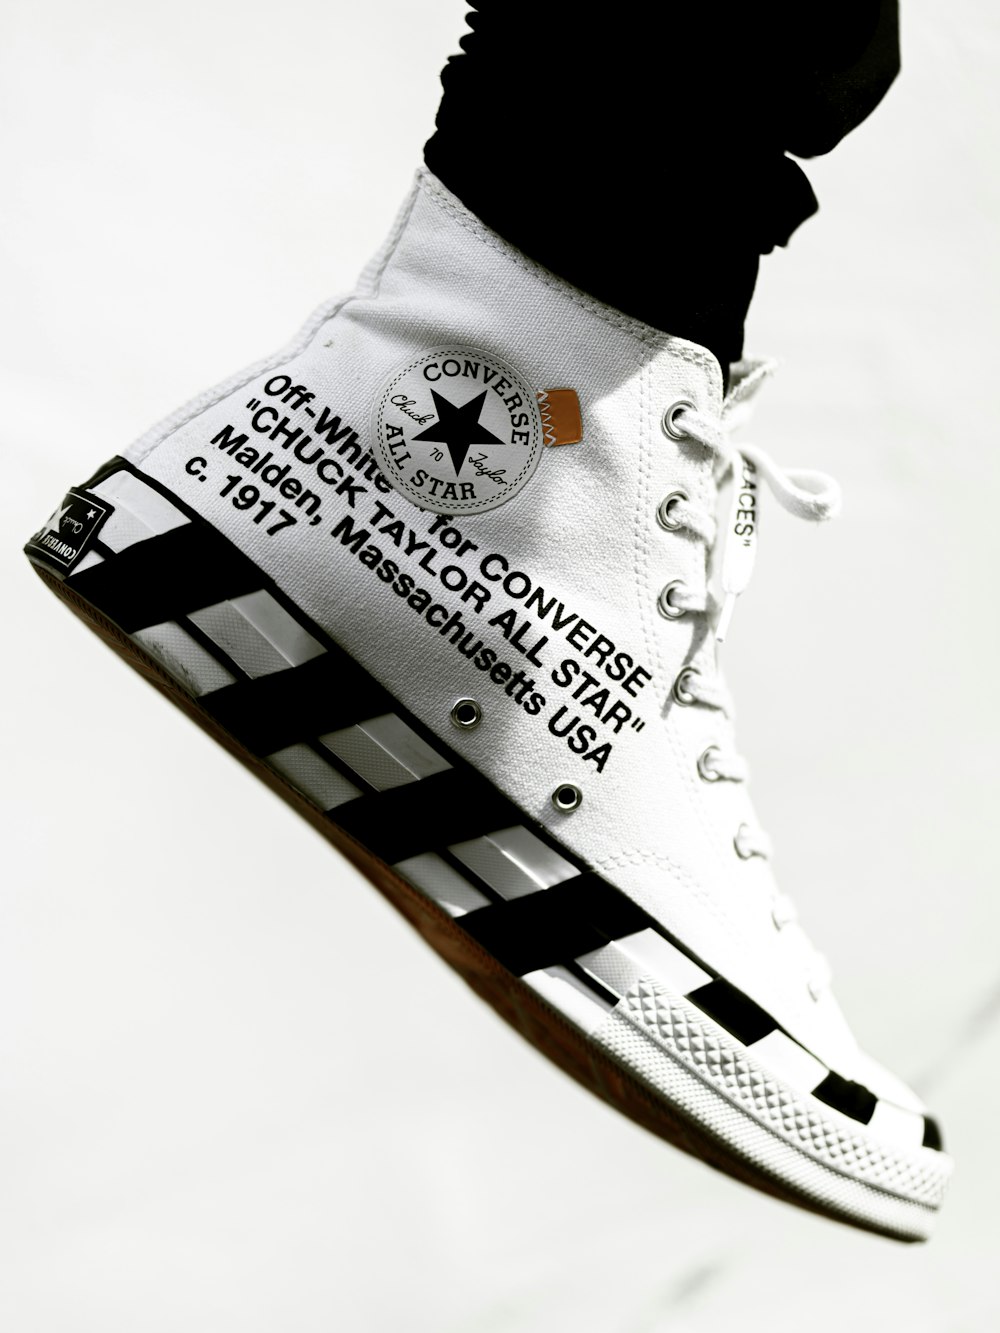 brandy articulo girar Foto Zapatillas altas blancas y negras converse all star – Imagen  Blanquecino gratis en Unsplash